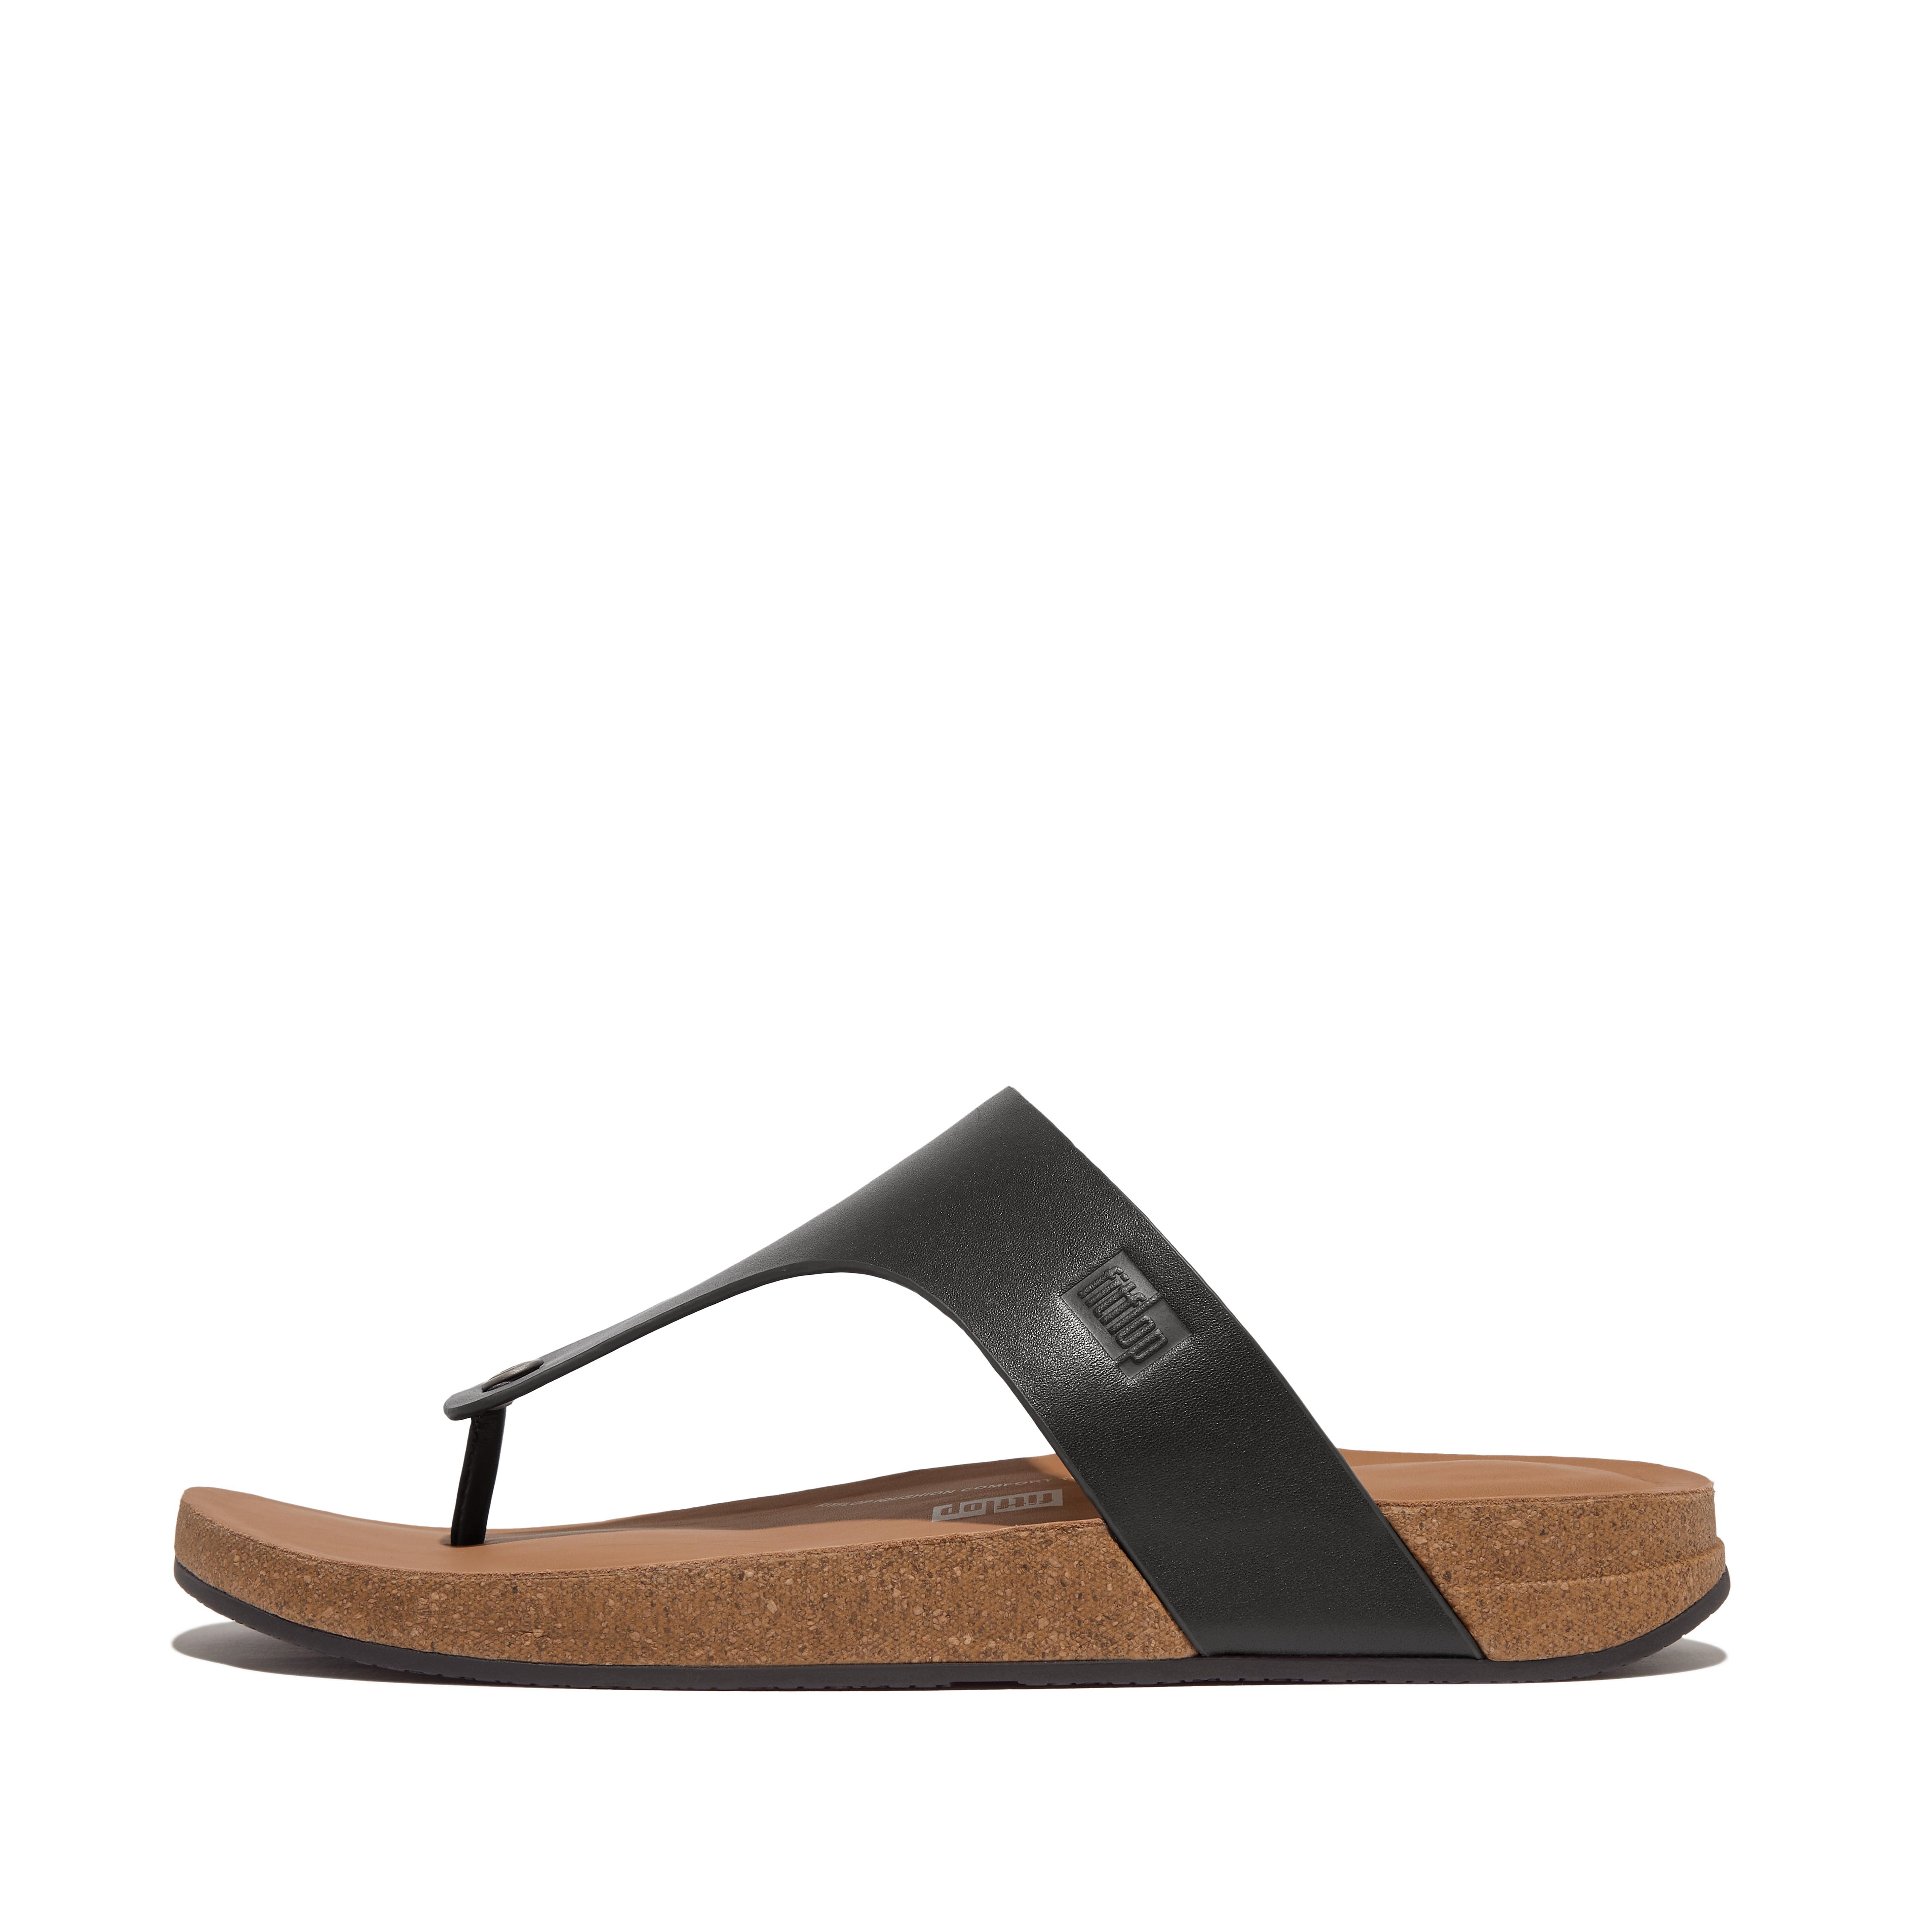 핏플랍 Fitflop Leather Toe-Post Sandals,Black